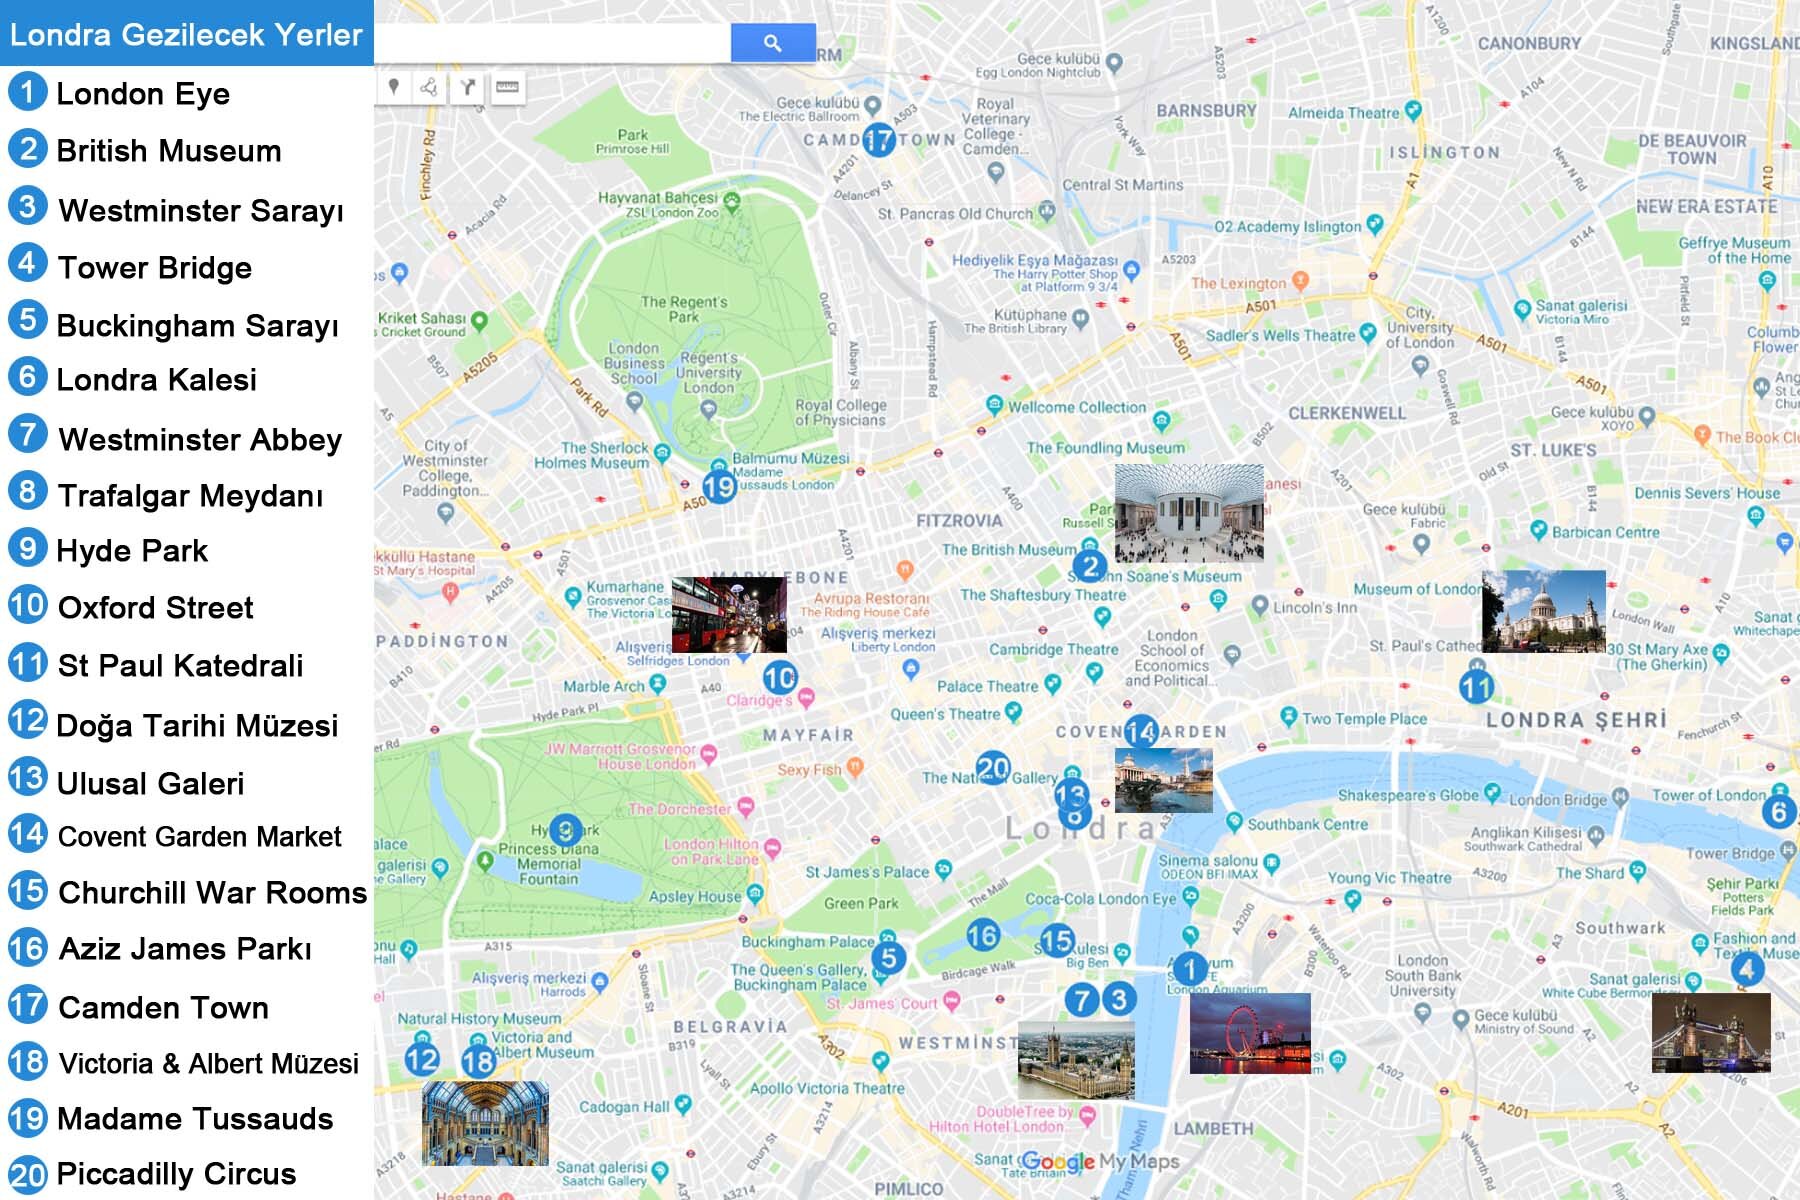 Londra Gezilecek Yerler Haritası